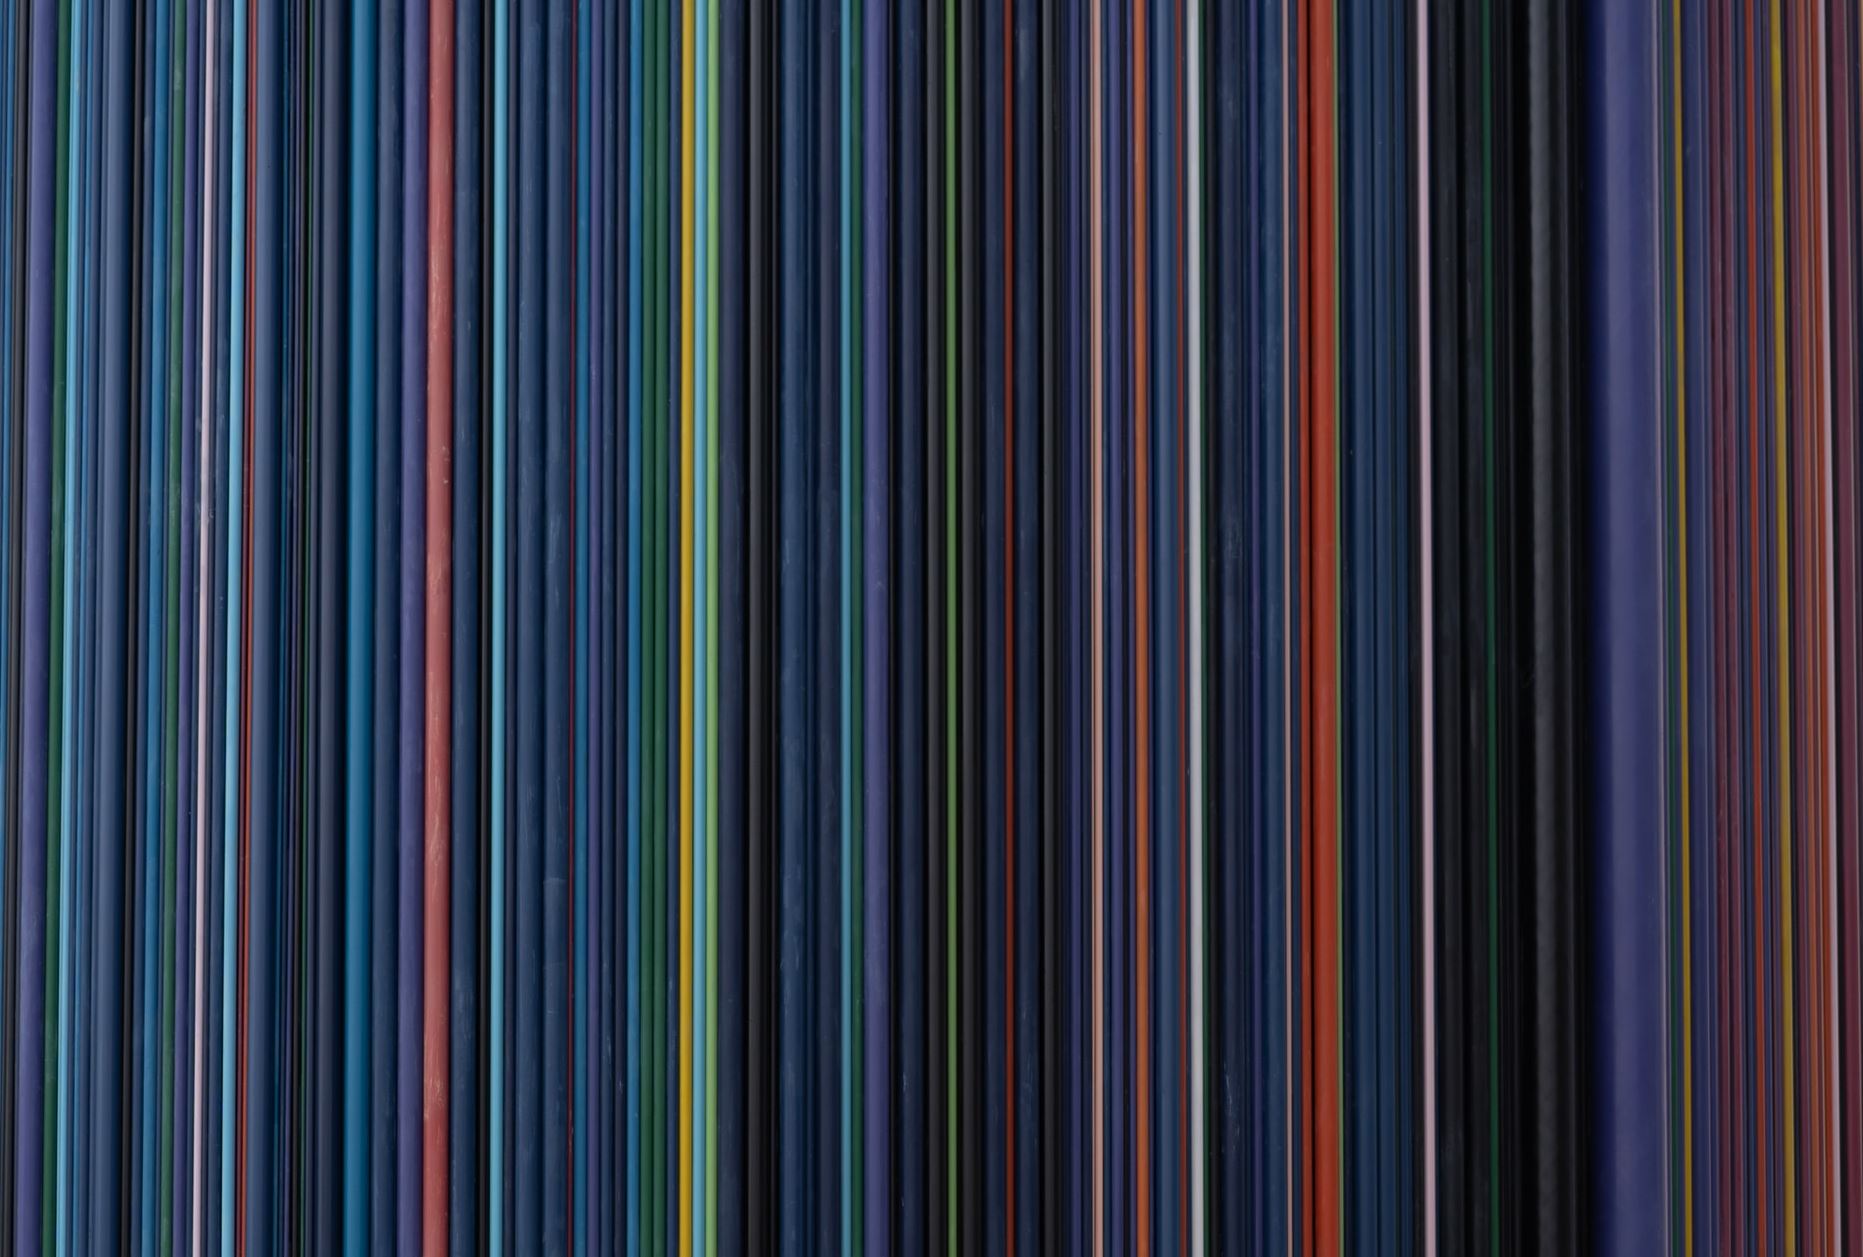 Spectrum of colours